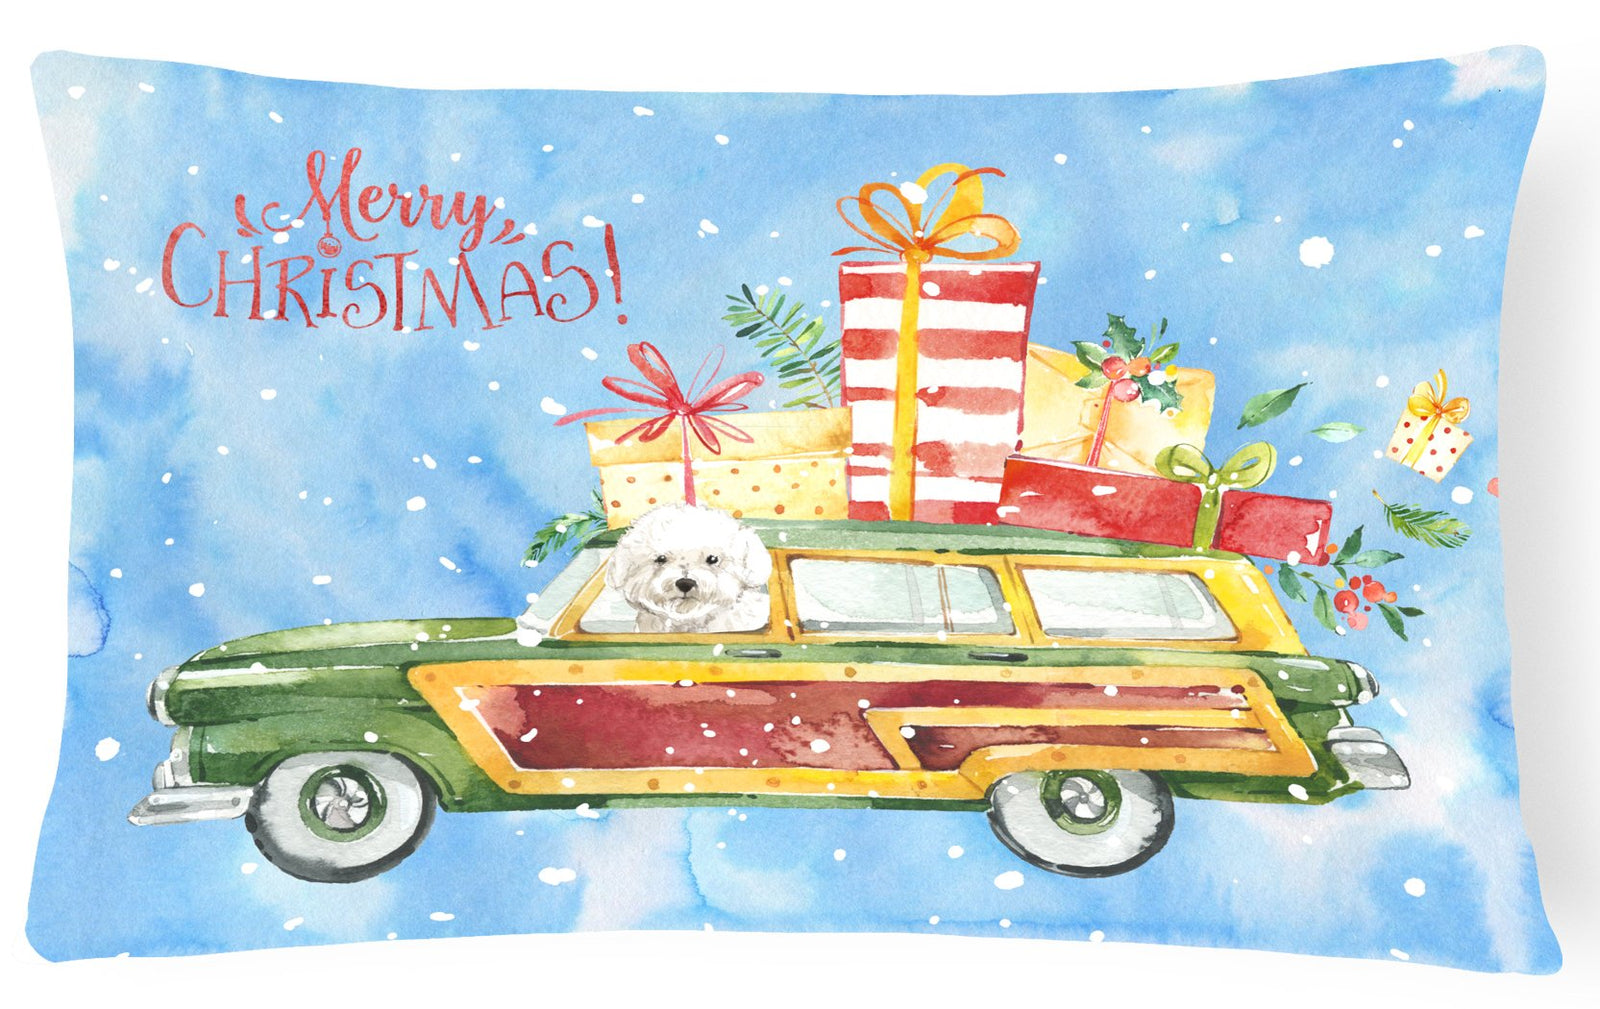 Merry Christmas Bichon Frisé Canvas Fabric Decorative Pillow CK2395PW1216 by Caroline's Treasures